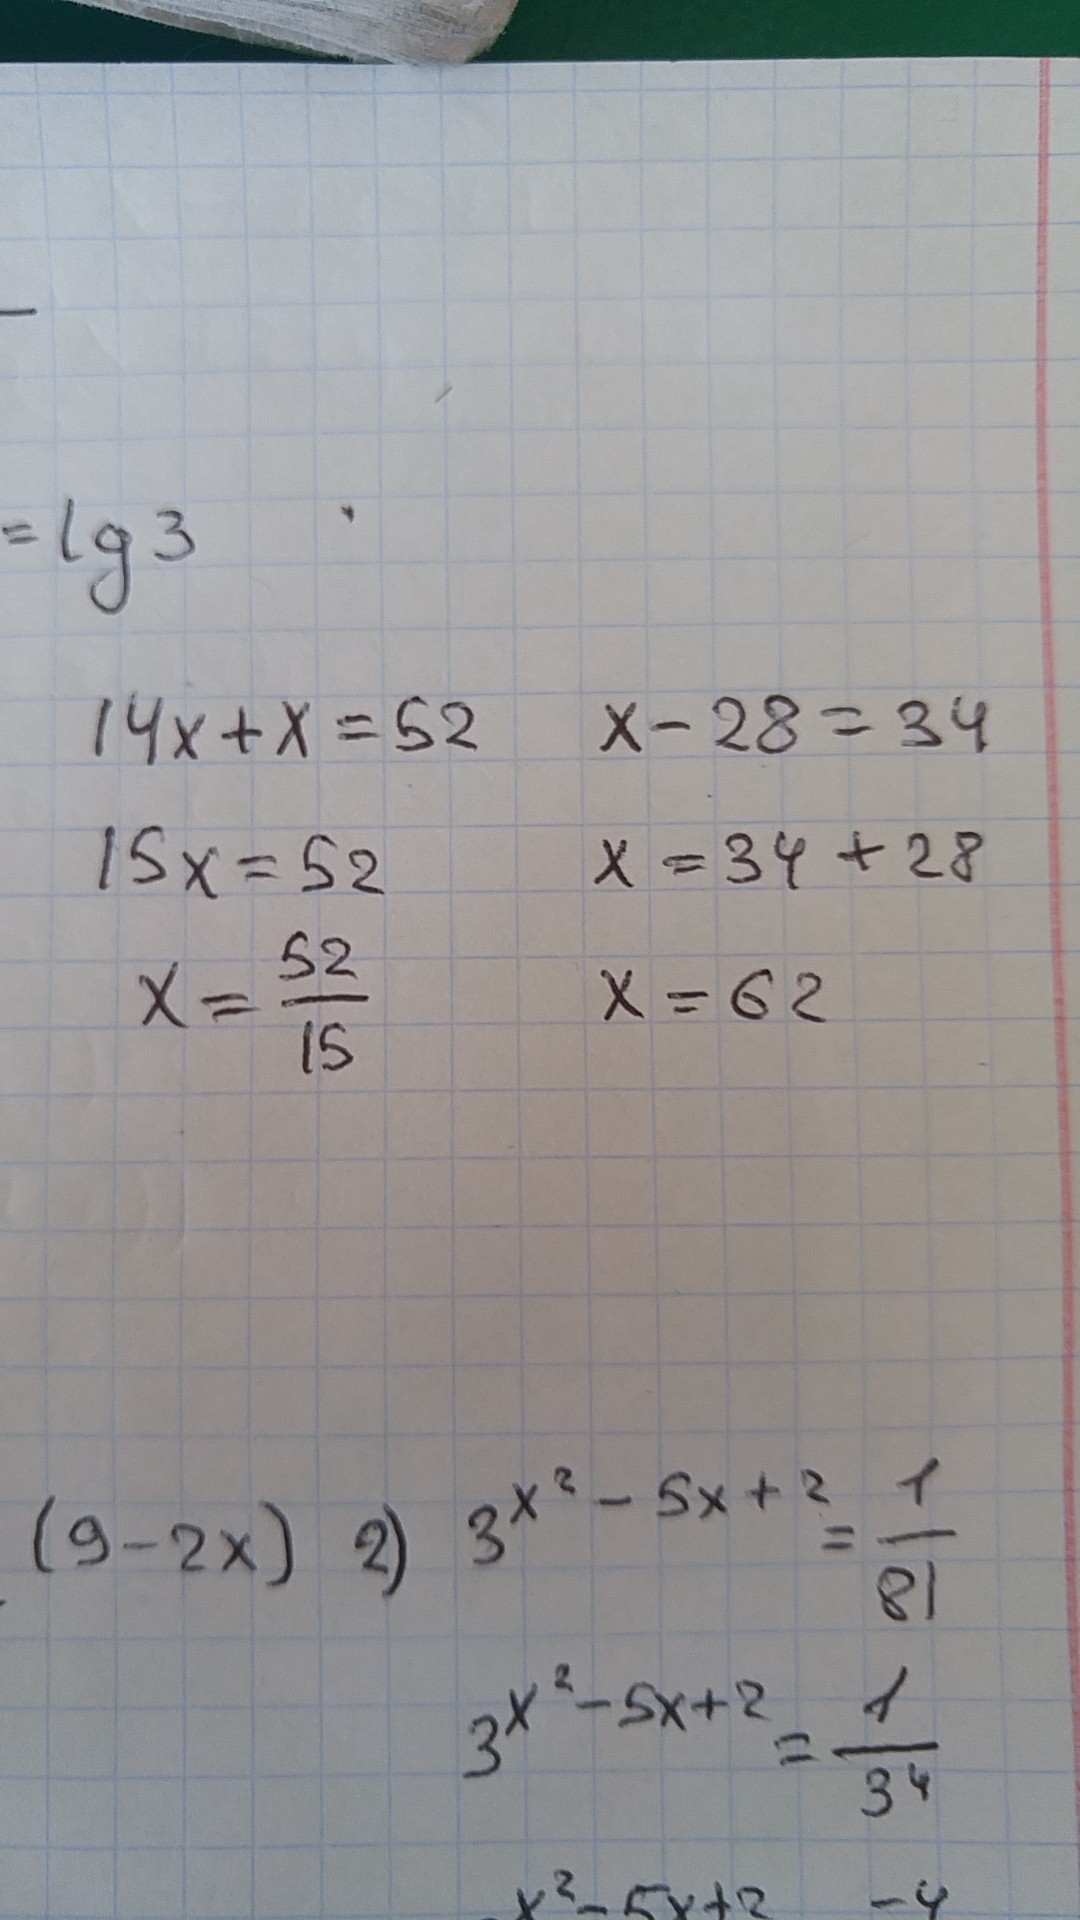 Реши уравнения 14 52